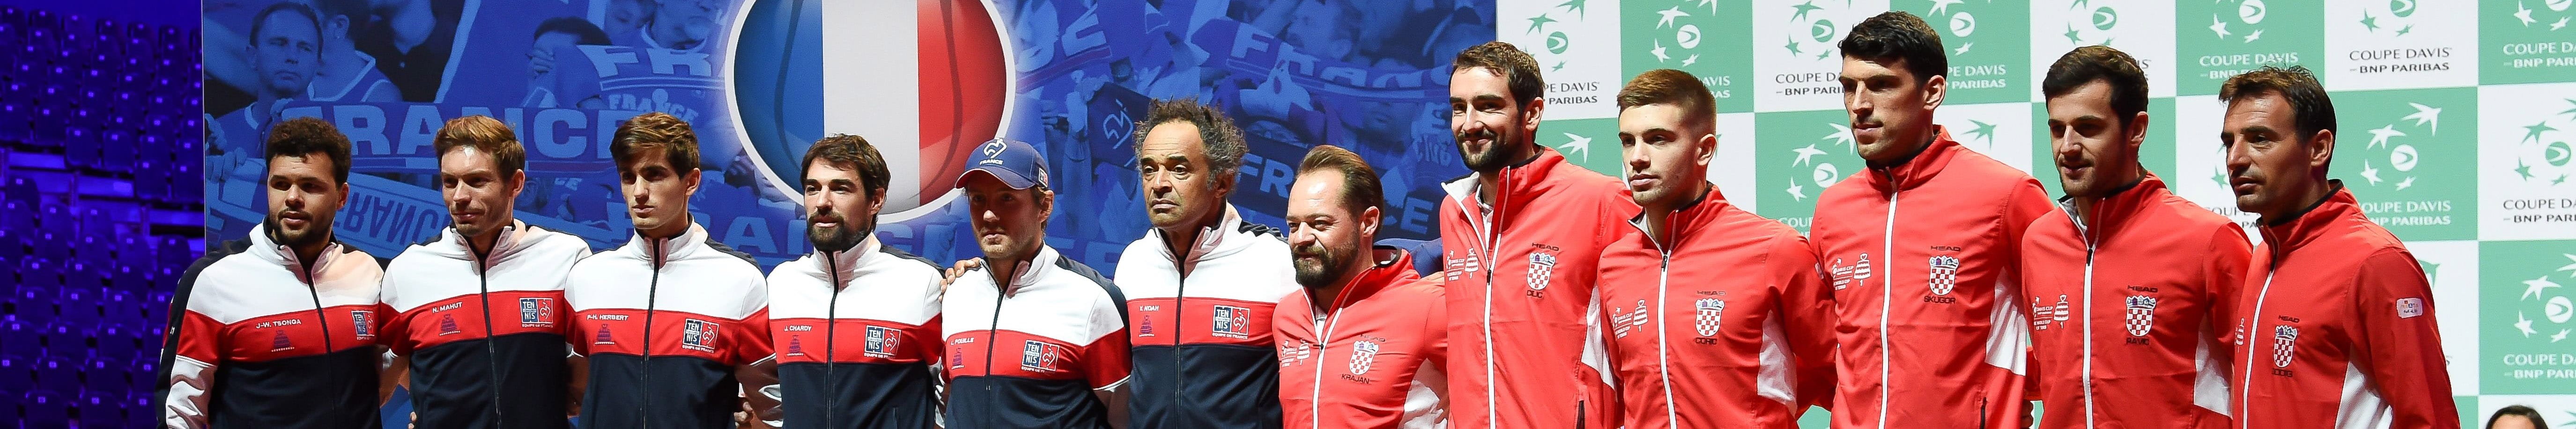 Davis Cup-Finale: Kroatien in Frankreich im Vorteil